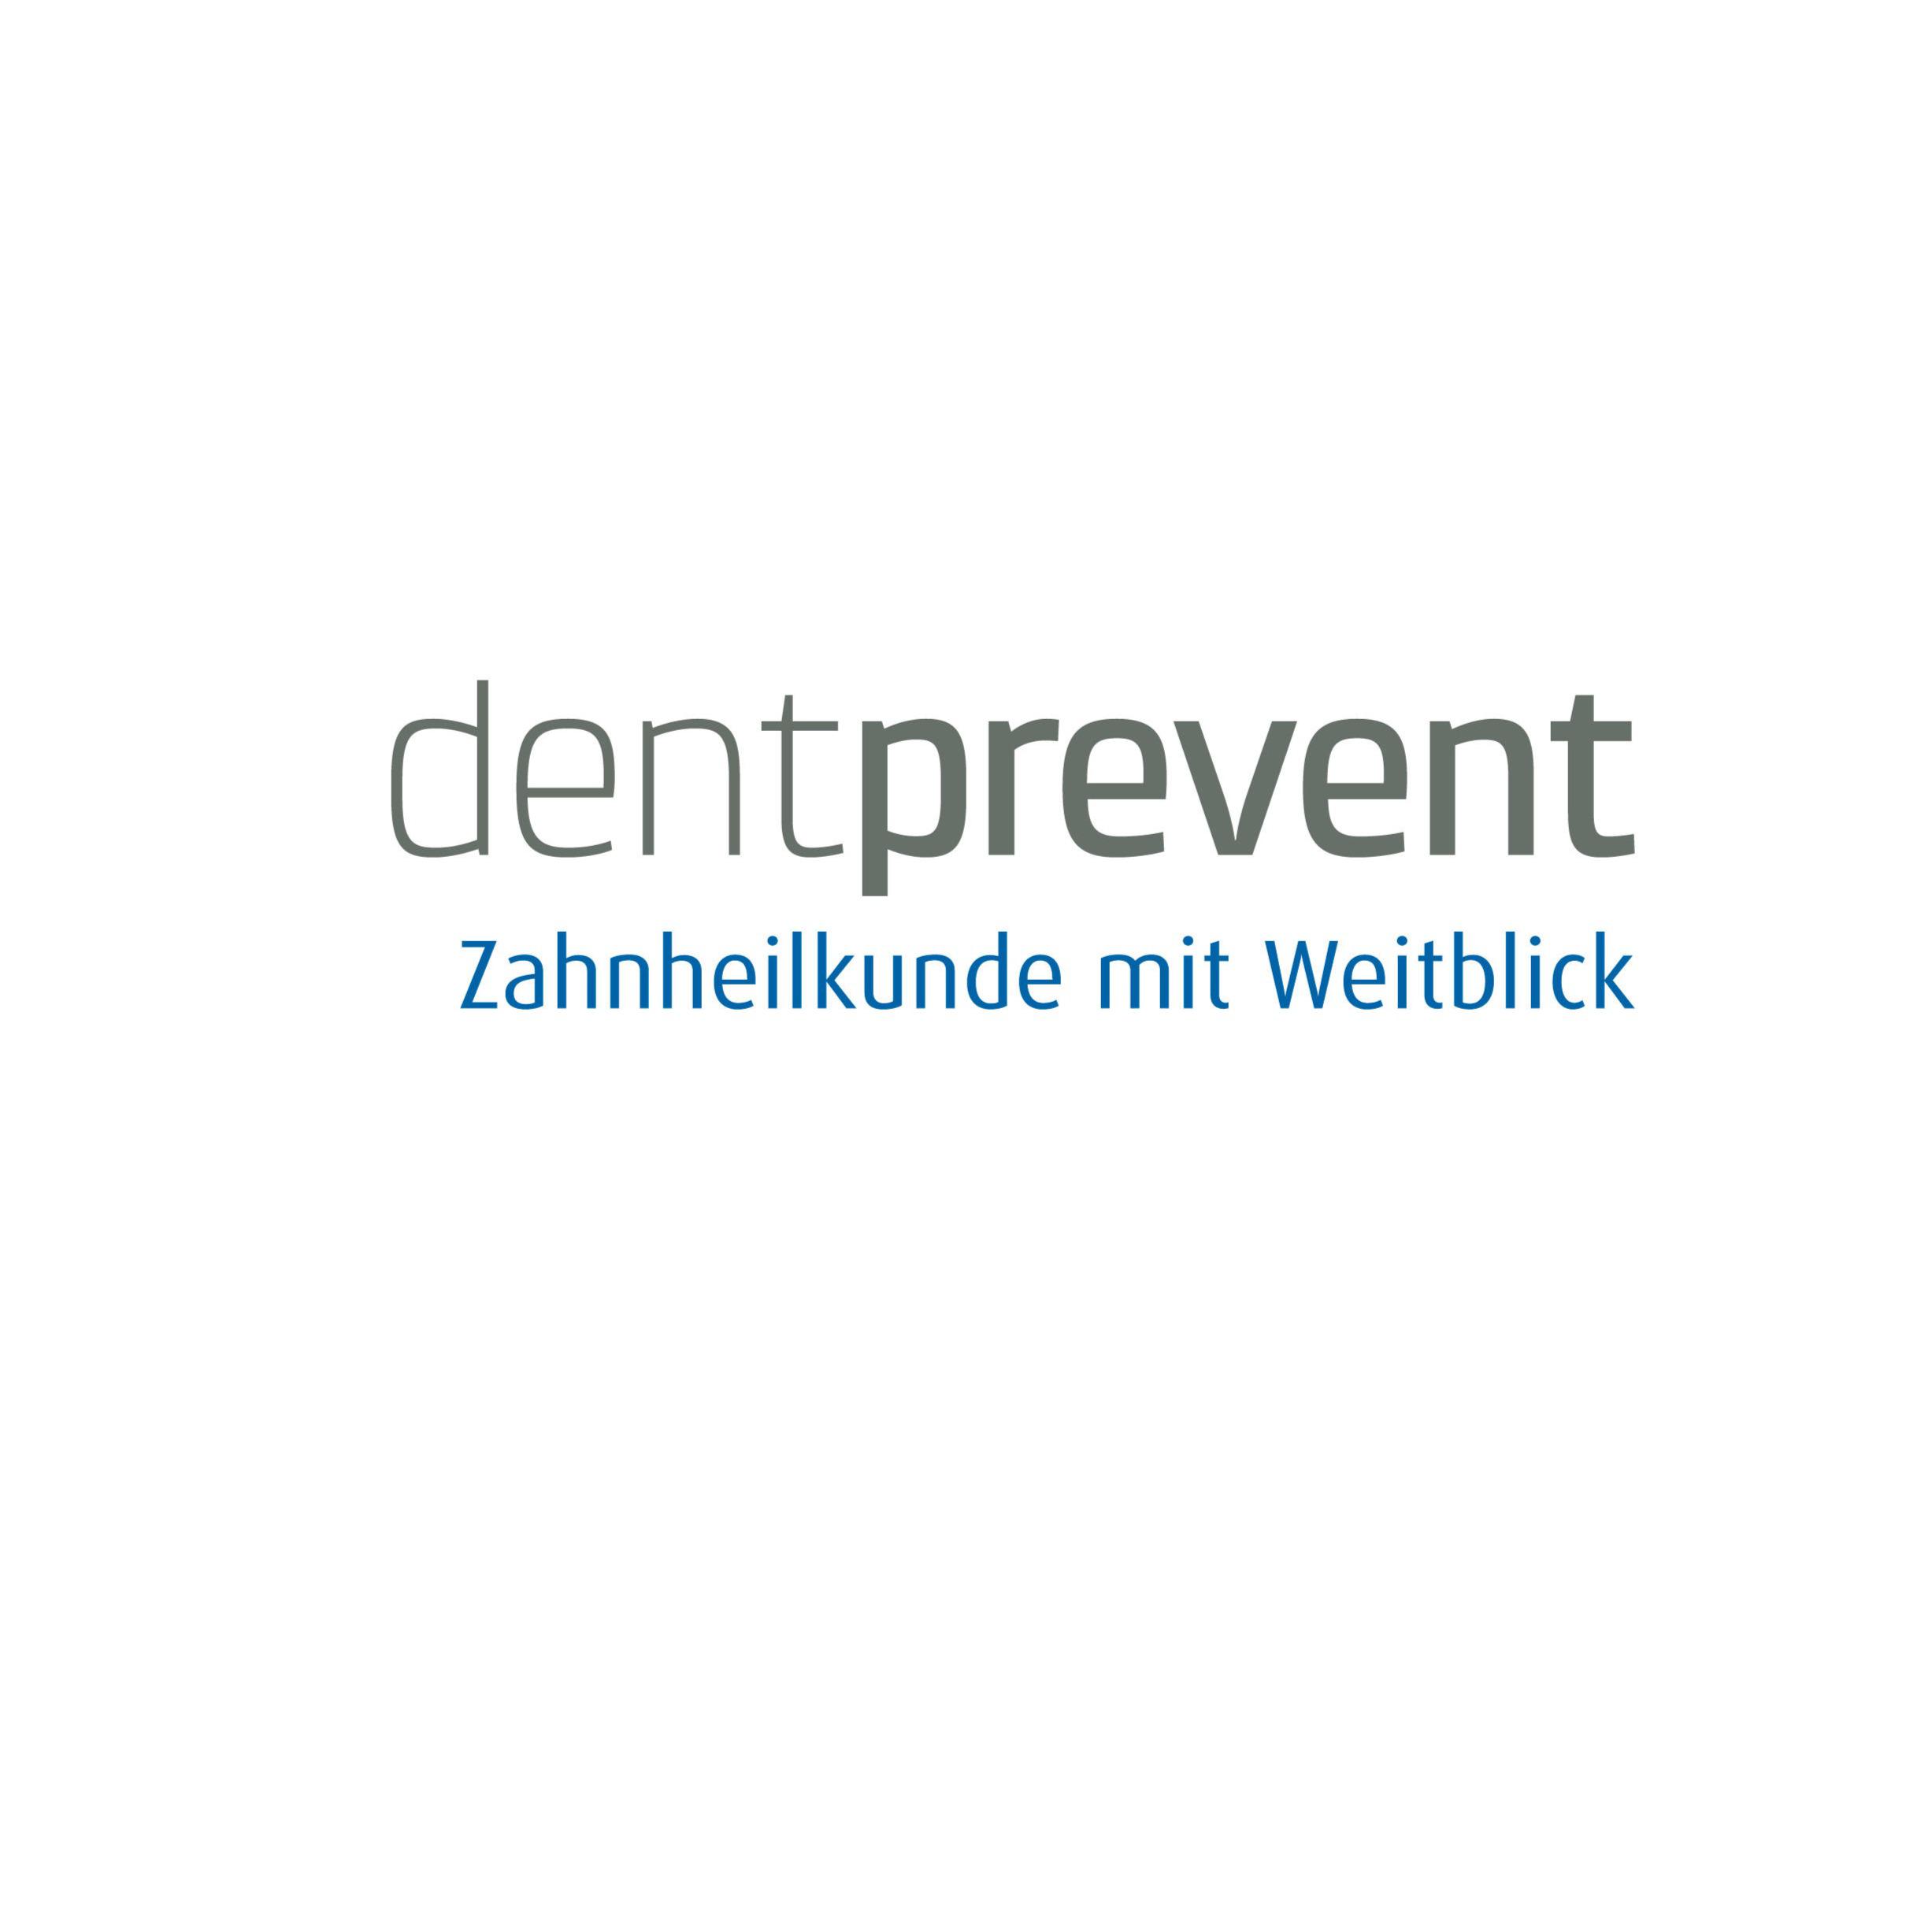 Zahnarzt Freiburg - Dentprevent Privatzahnärzte in Freiburg im Breisgau